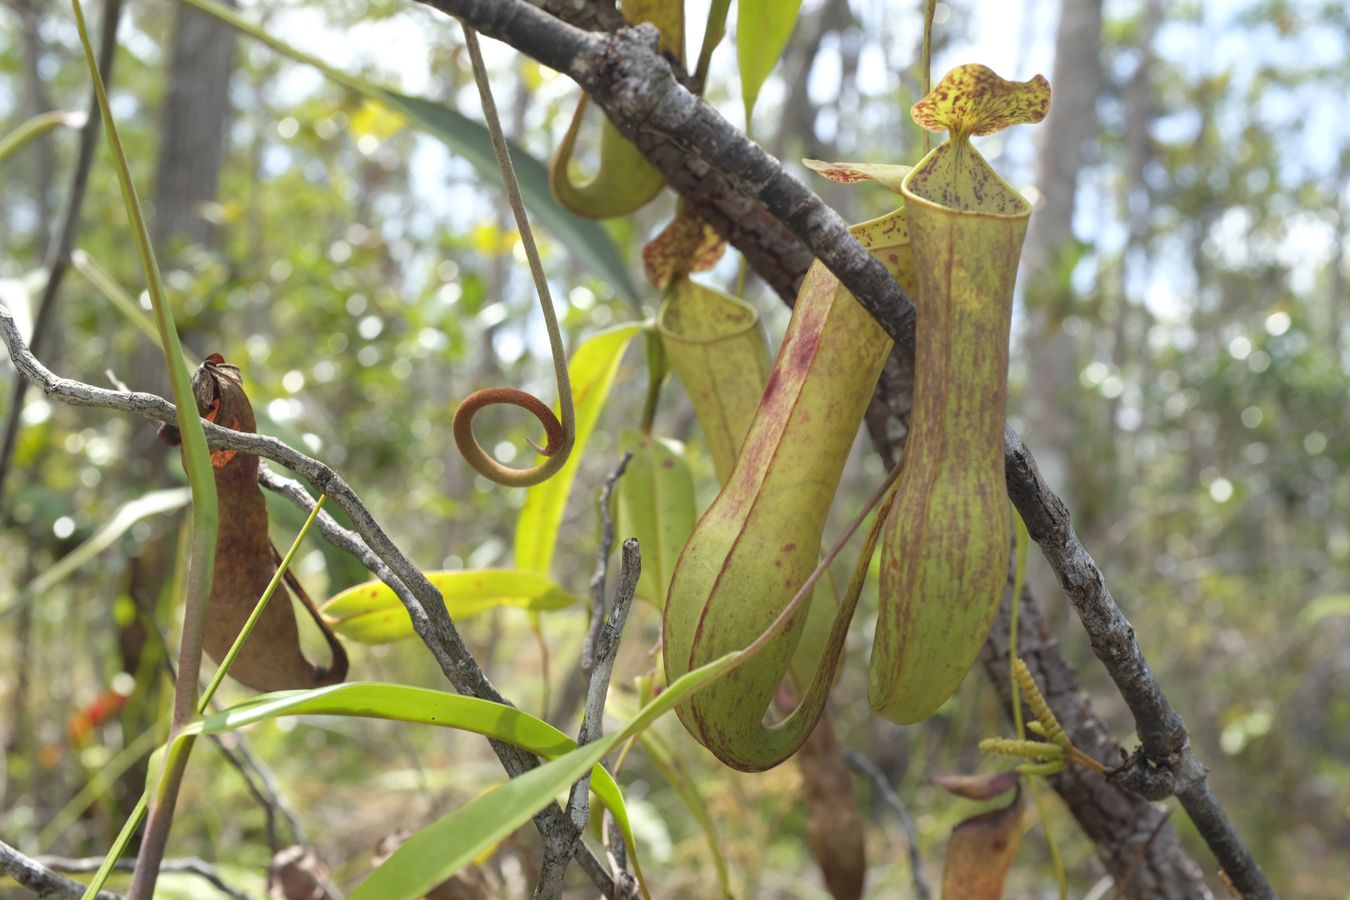 Pitcher Plant { Nepenthes Albomarginata }